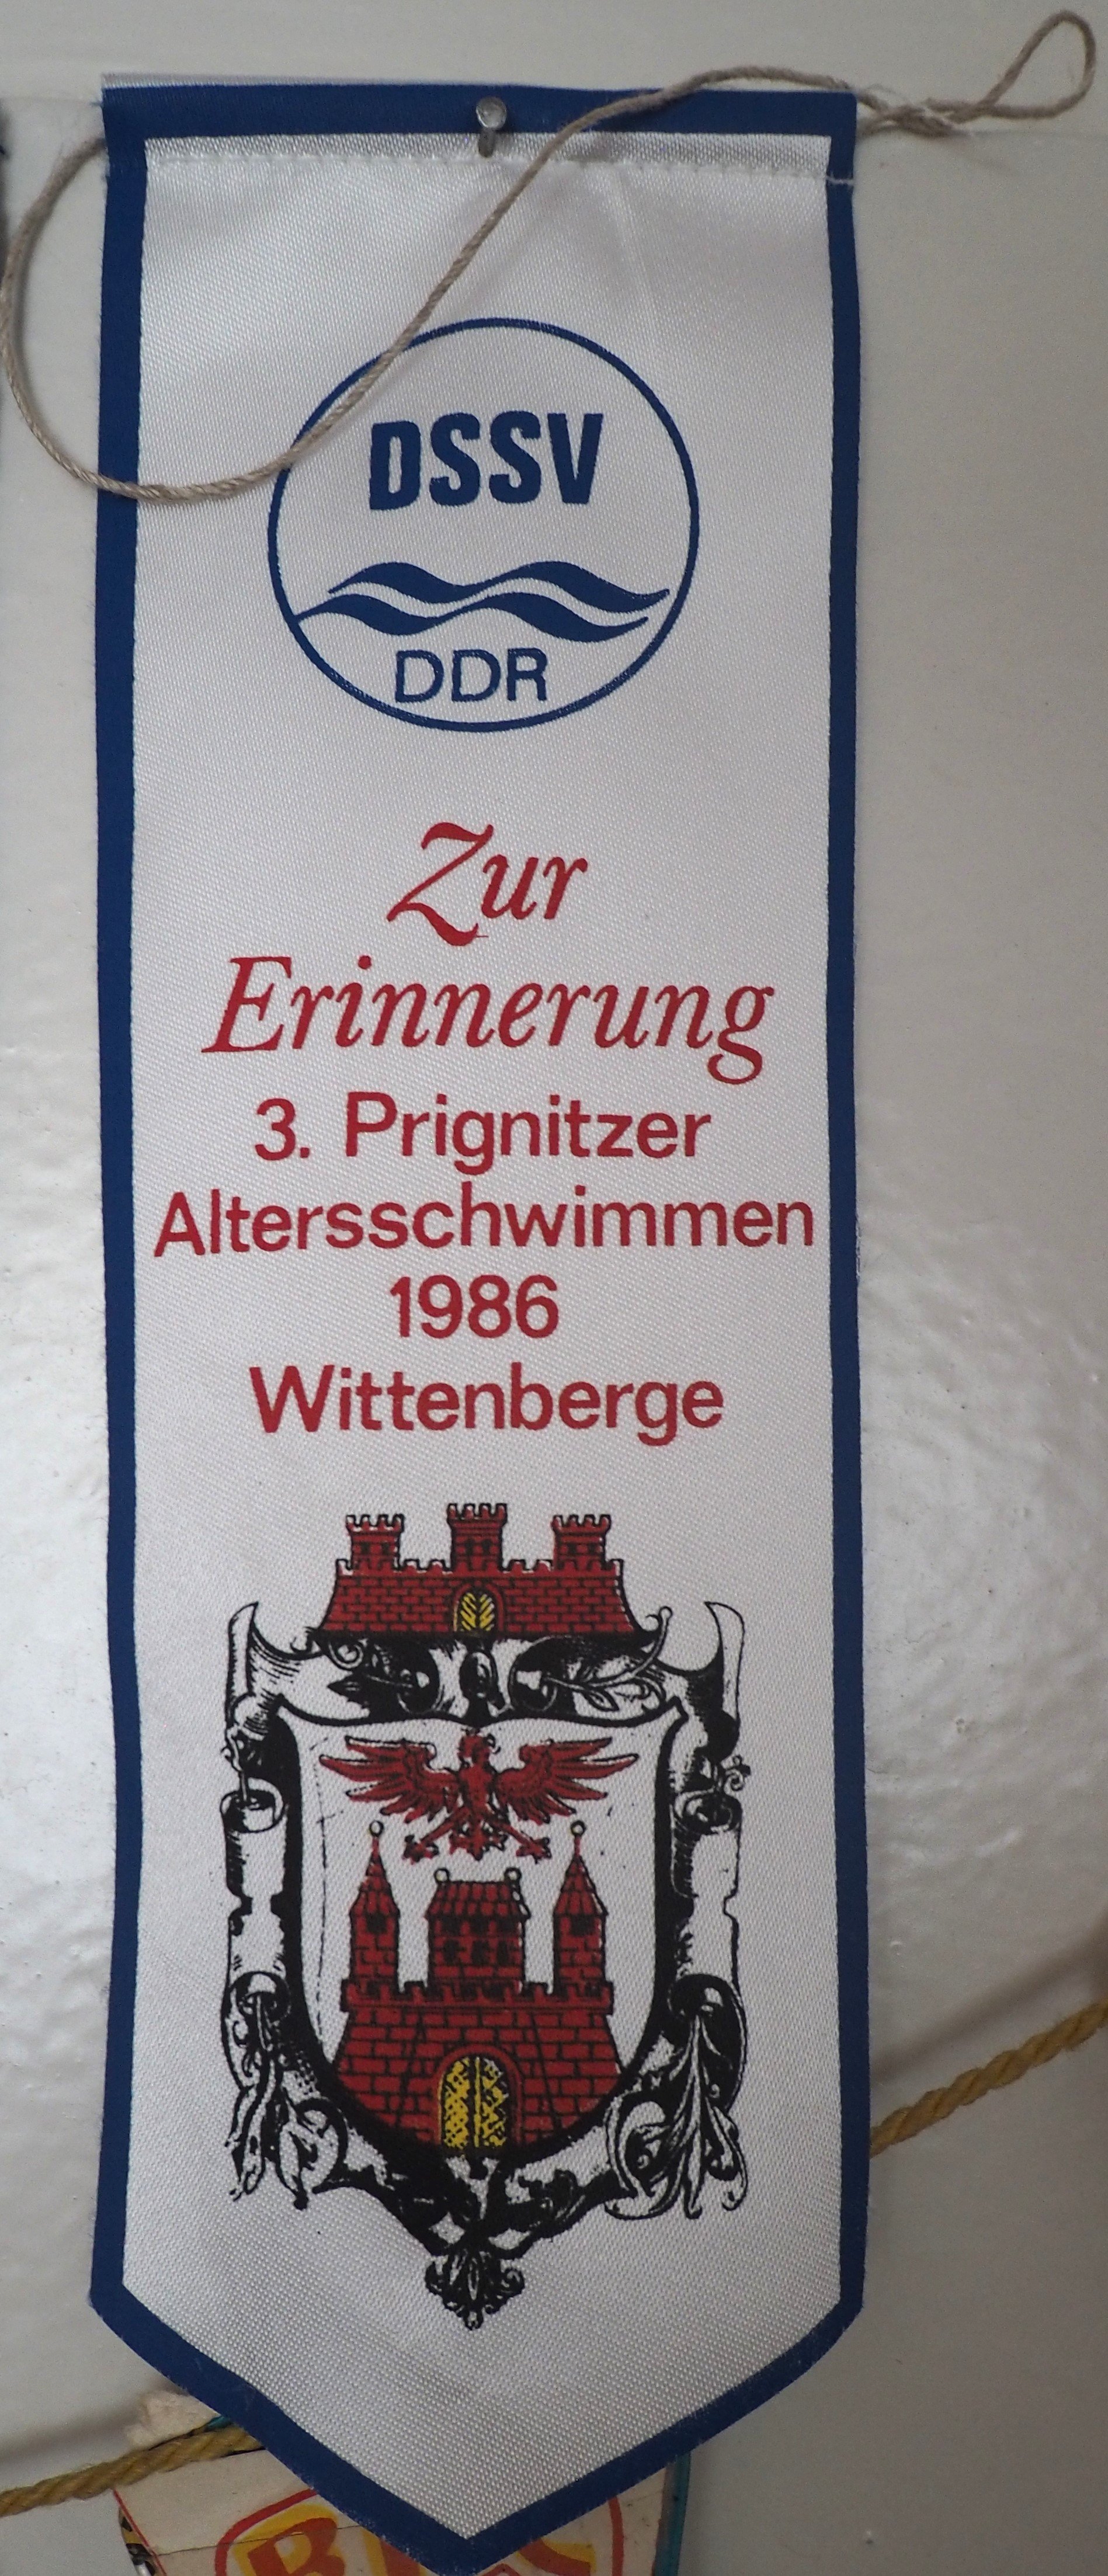 Wimpel: 3. Prignitzer Altersschwimmen 1986 in Wittenberge (DDR Geschichtsmuseum im Dokumentationszentrum Perleberg CC BY-SA)